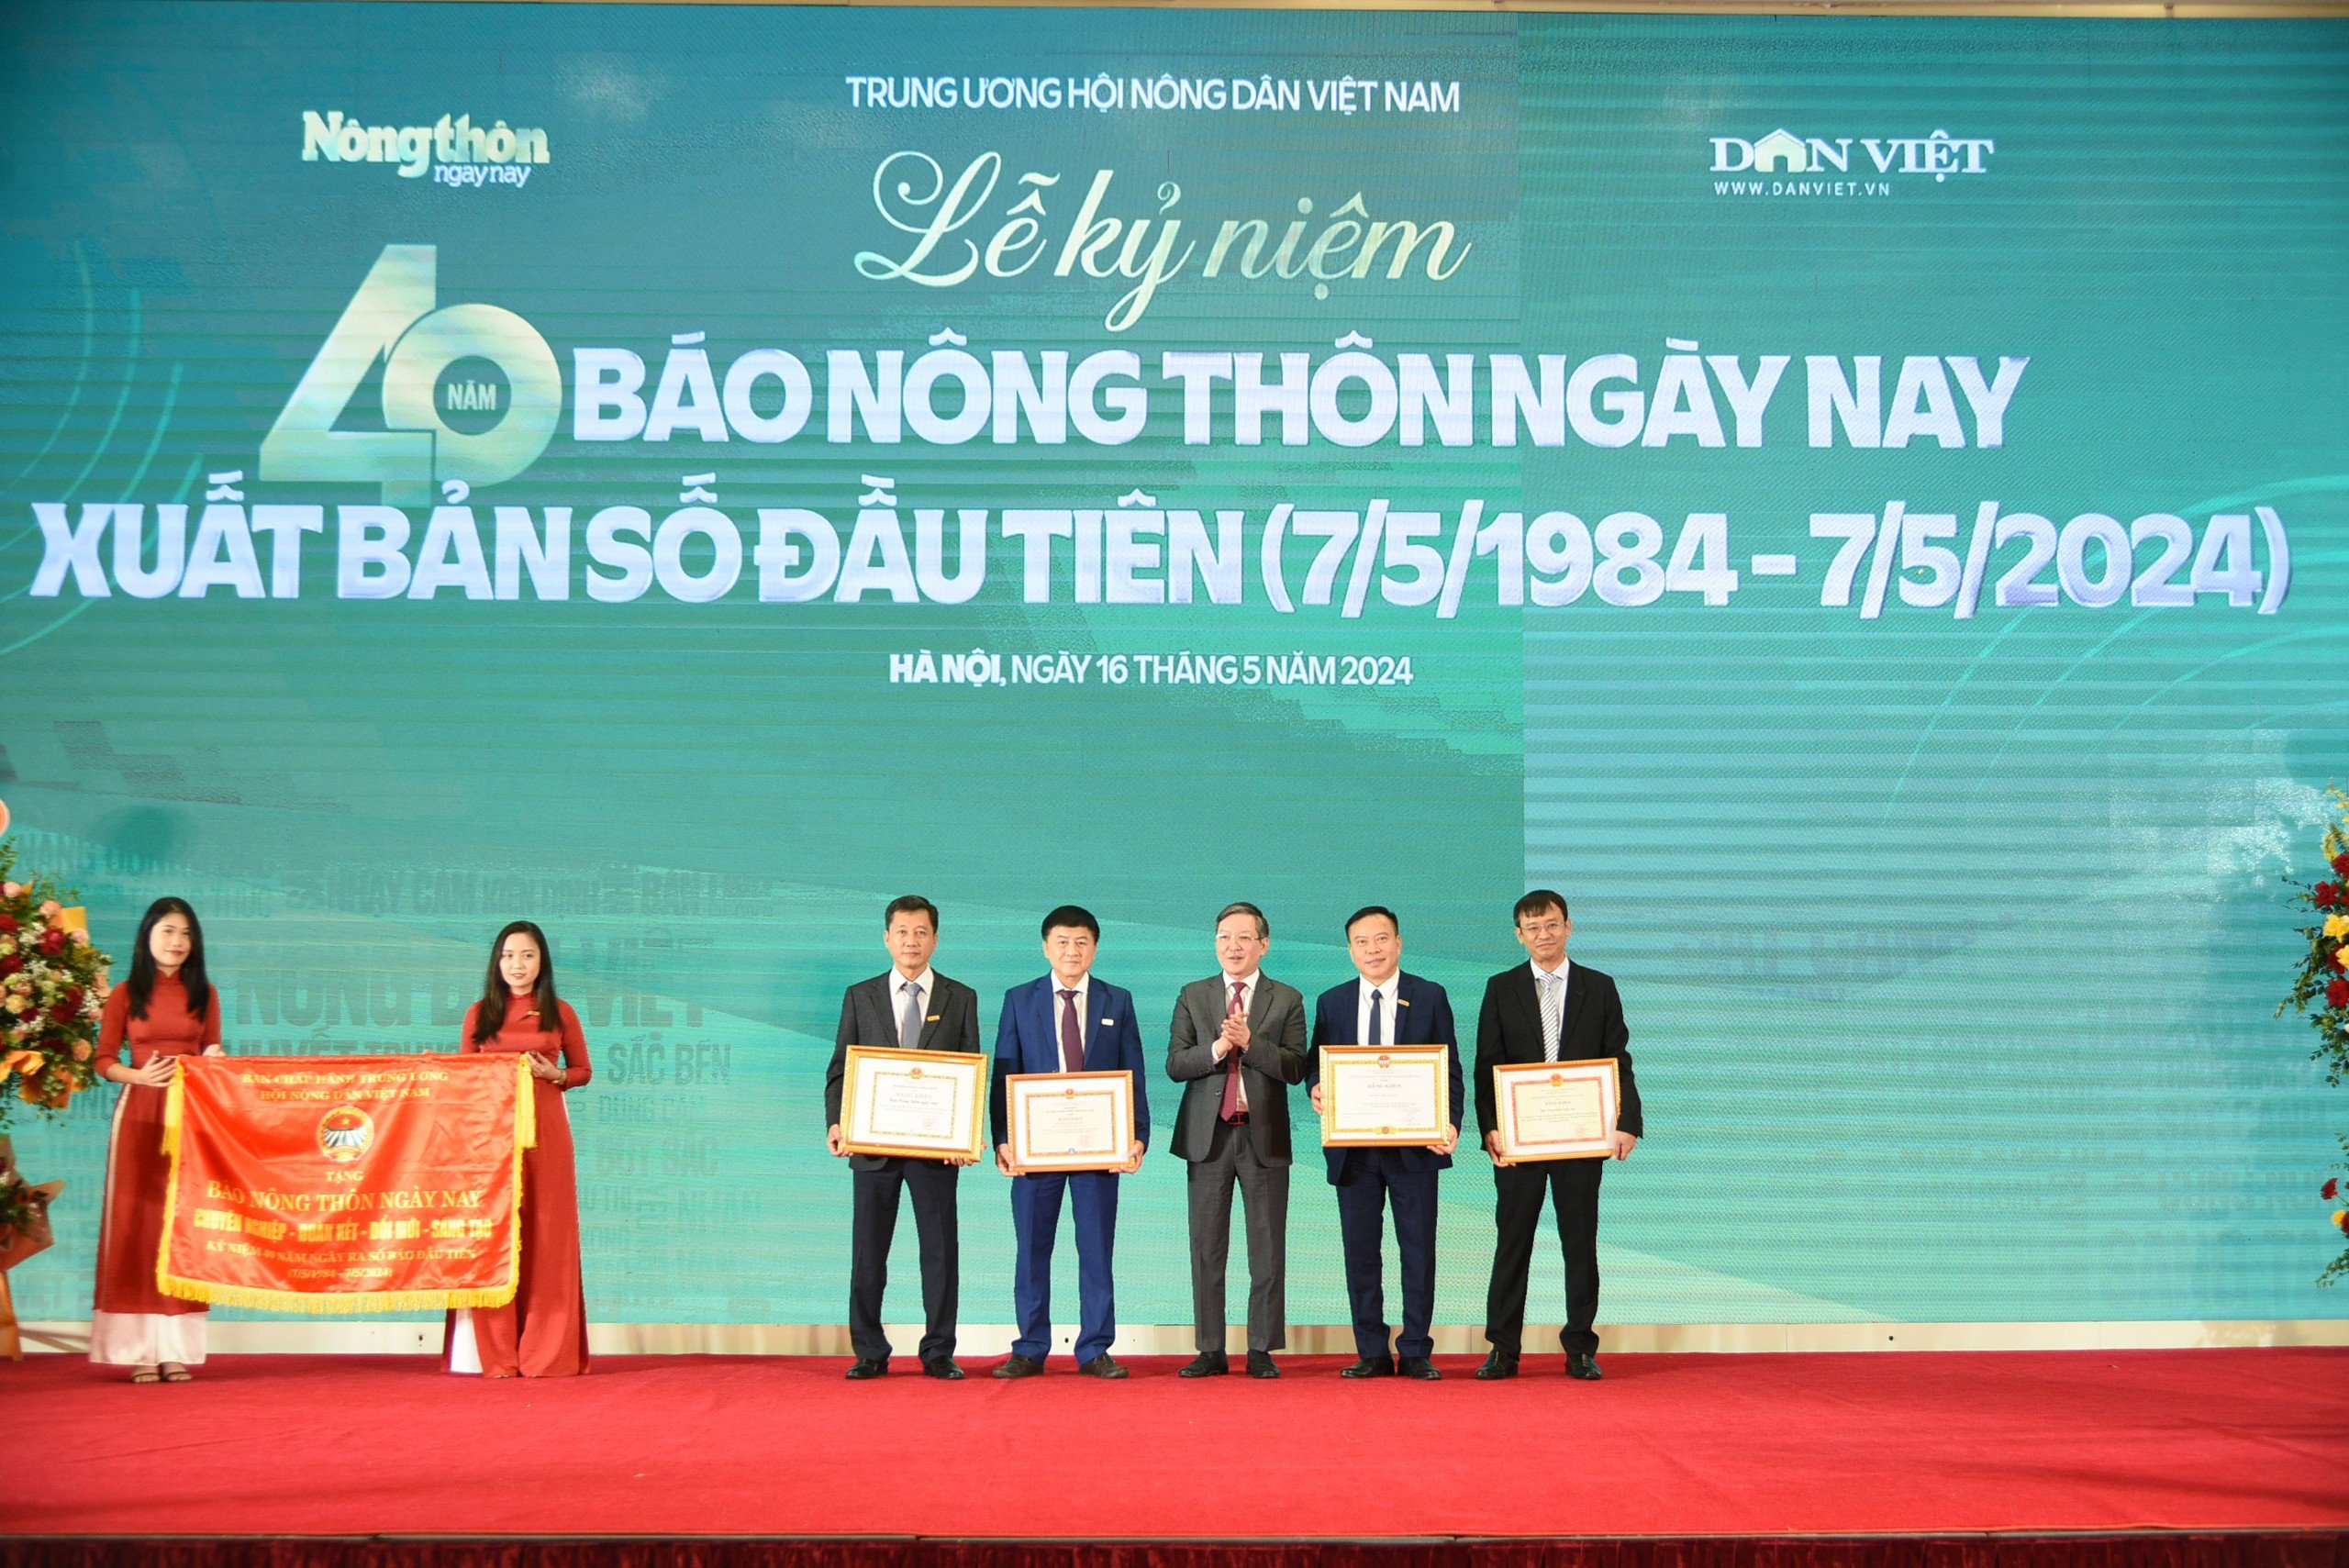 Toàn văn bài phát biểu của Chủ tịch Hội Nông dân Việt Nam Lương Quốc Đoàn tại lễ kỷ niệm 40 năm Báo NTNN- Ảnh 2.